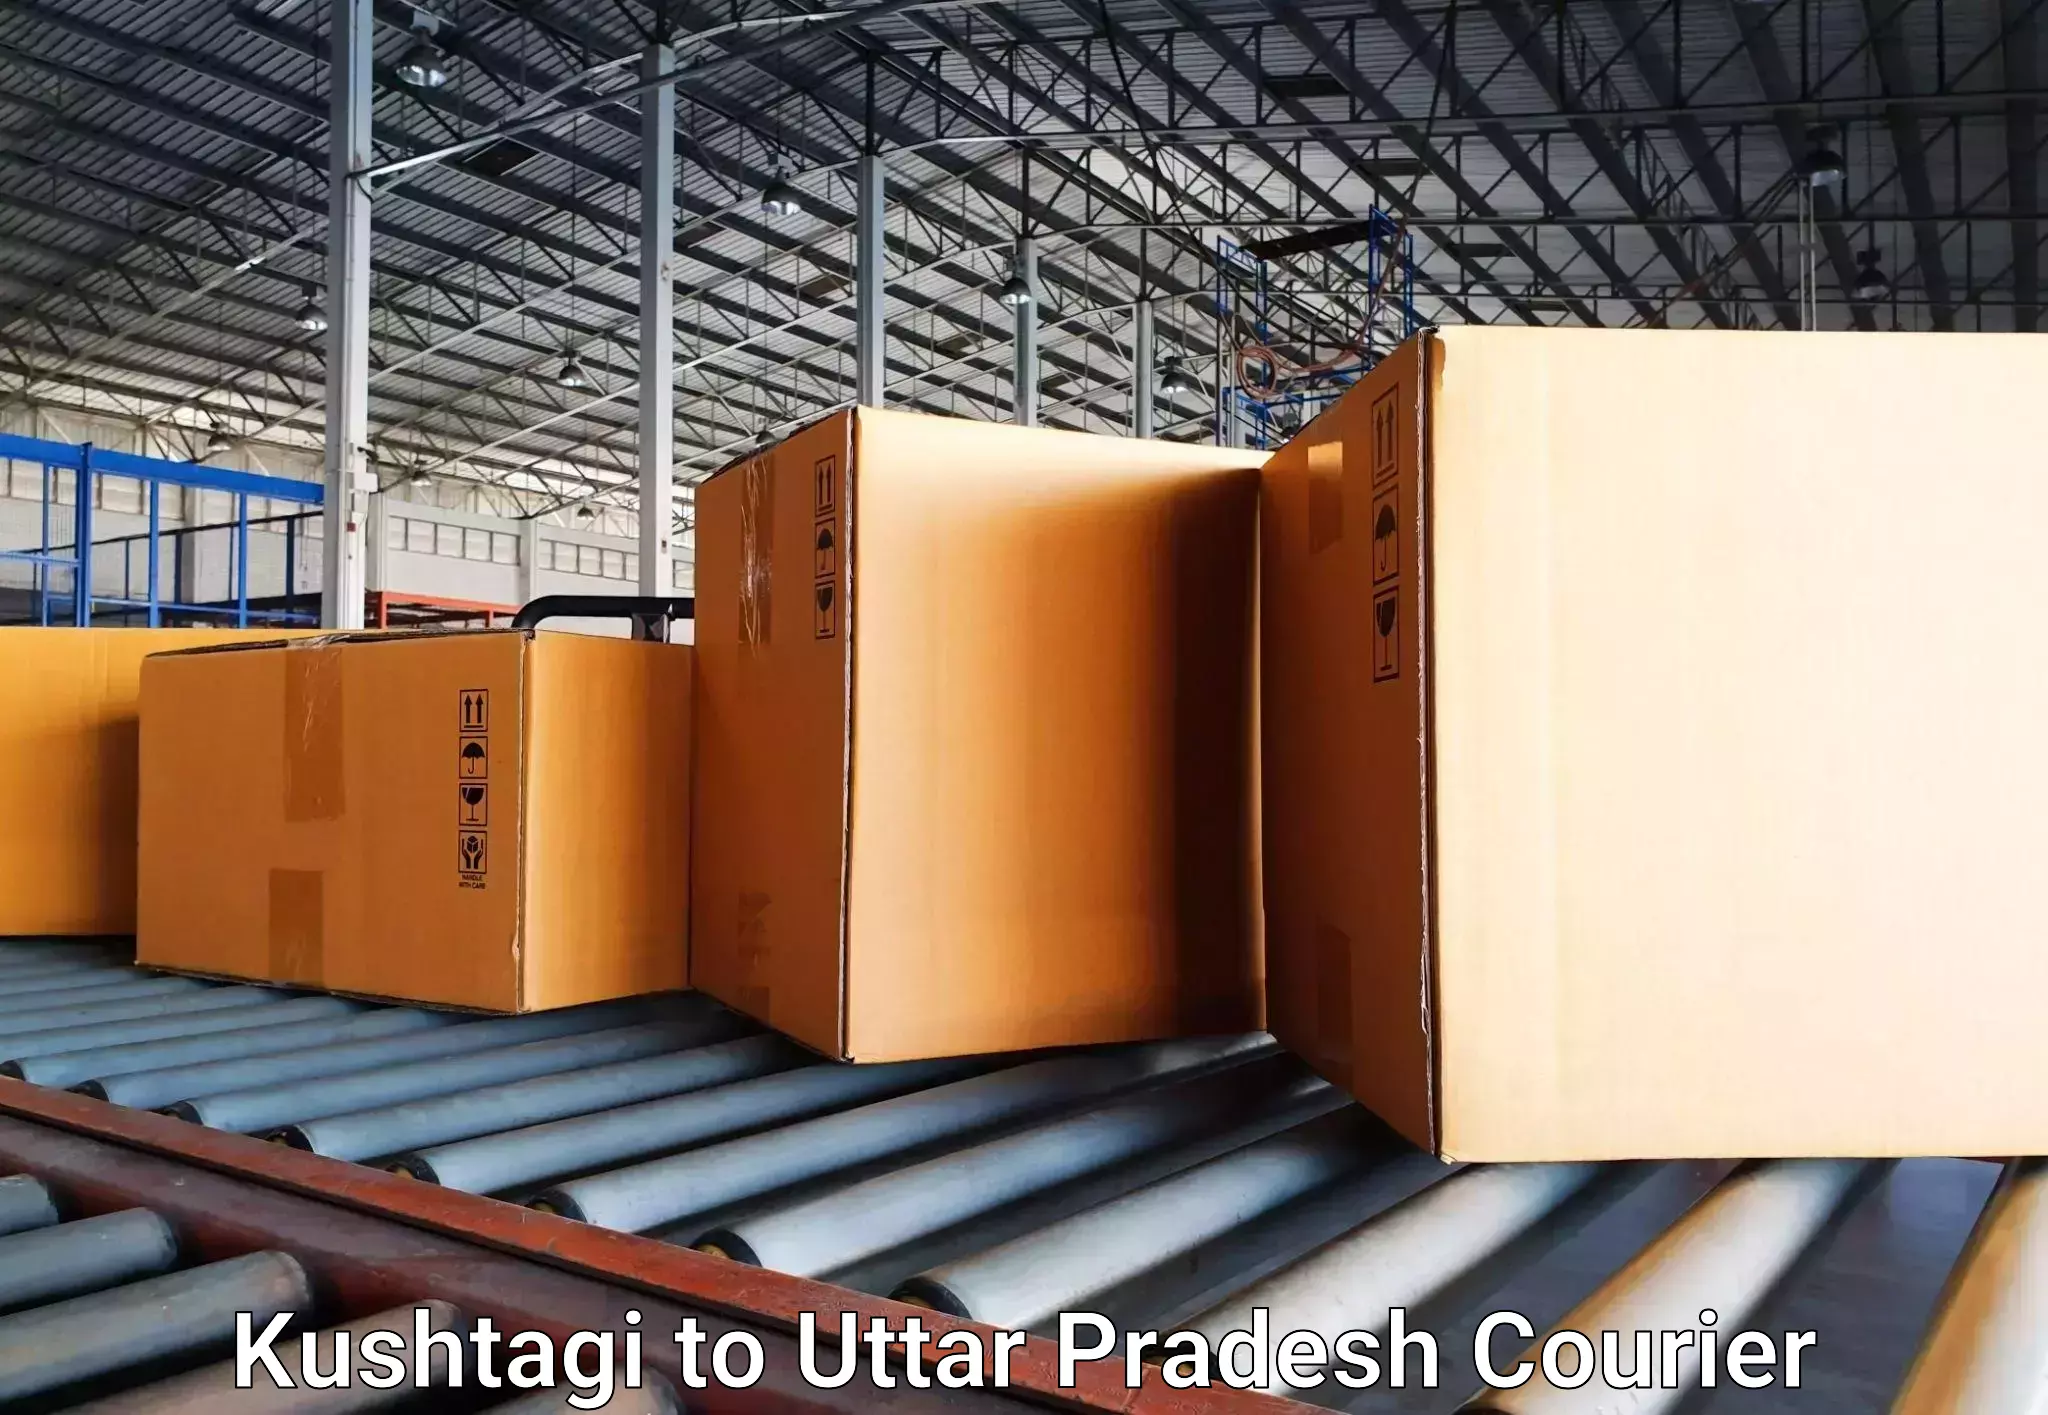 Luggage delivery solutions Kushtagi to Shikohabad